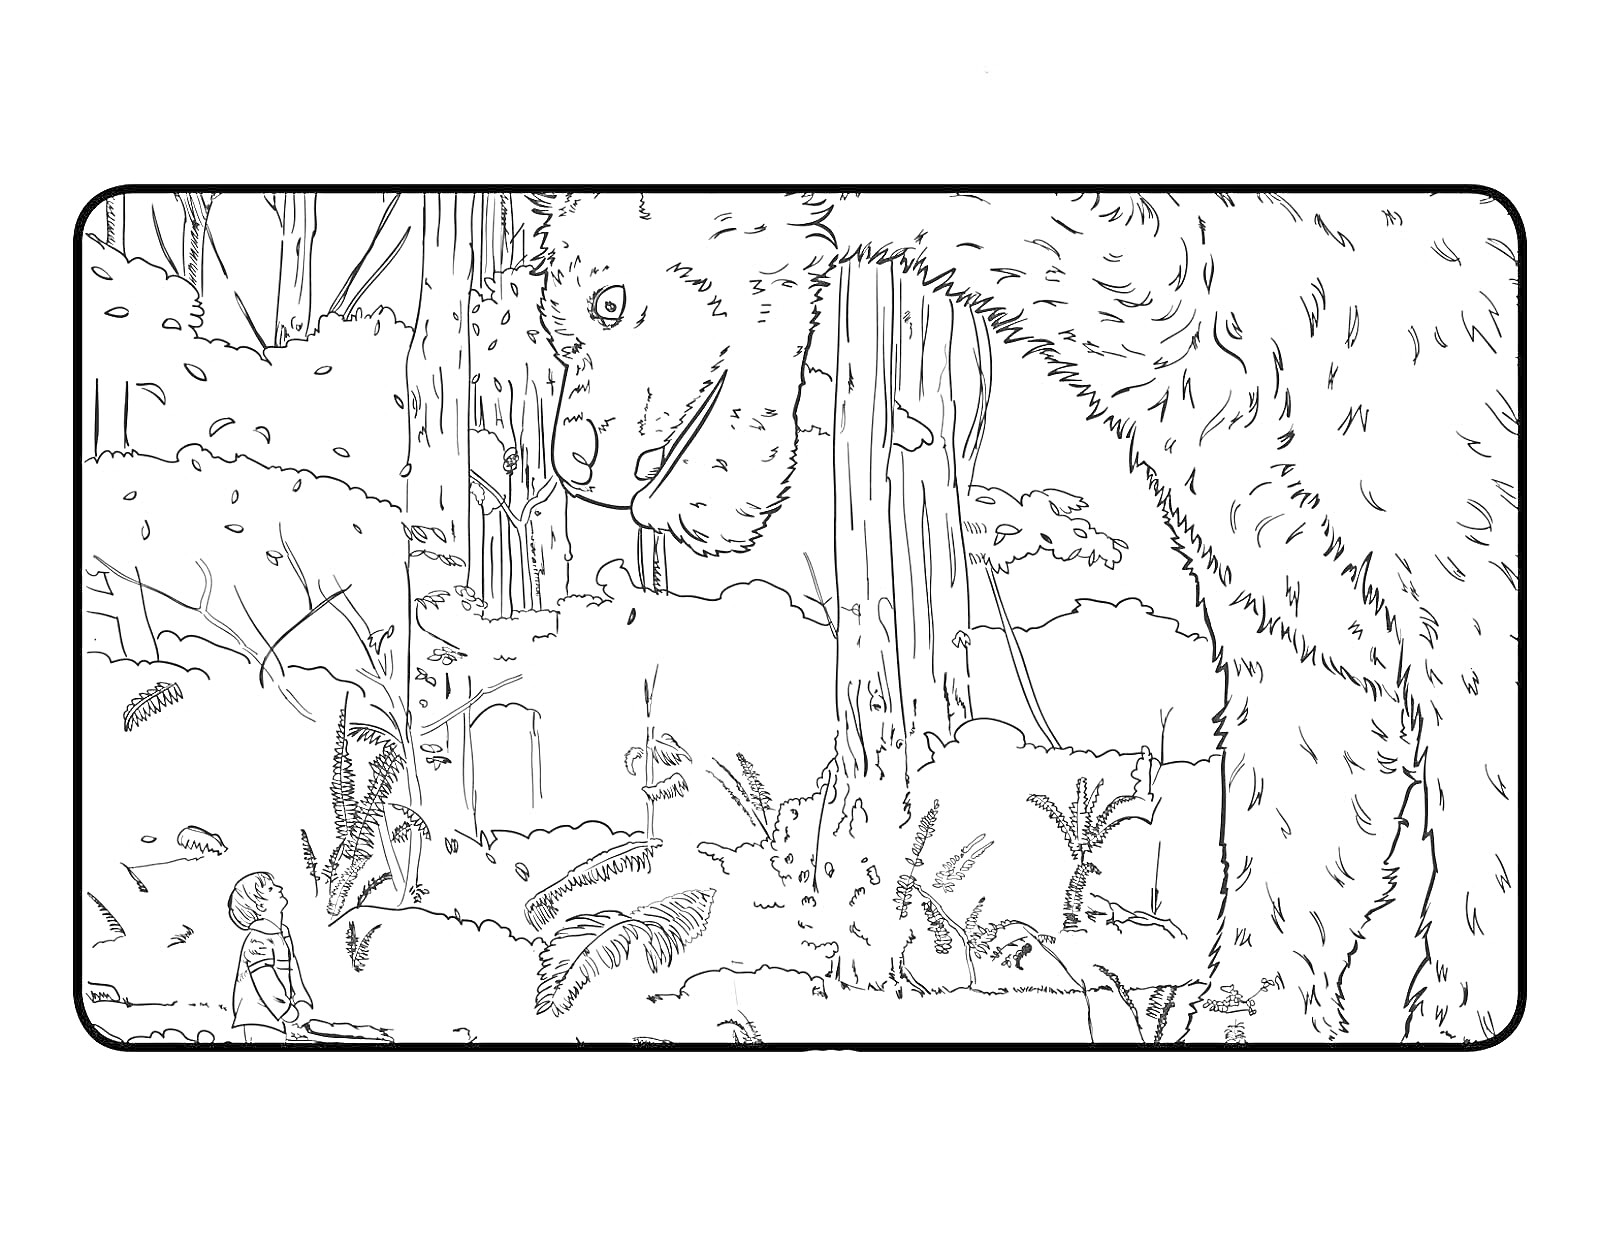  Пит и его дракон в лесу: мальчик, дракон, деревья и кустарники